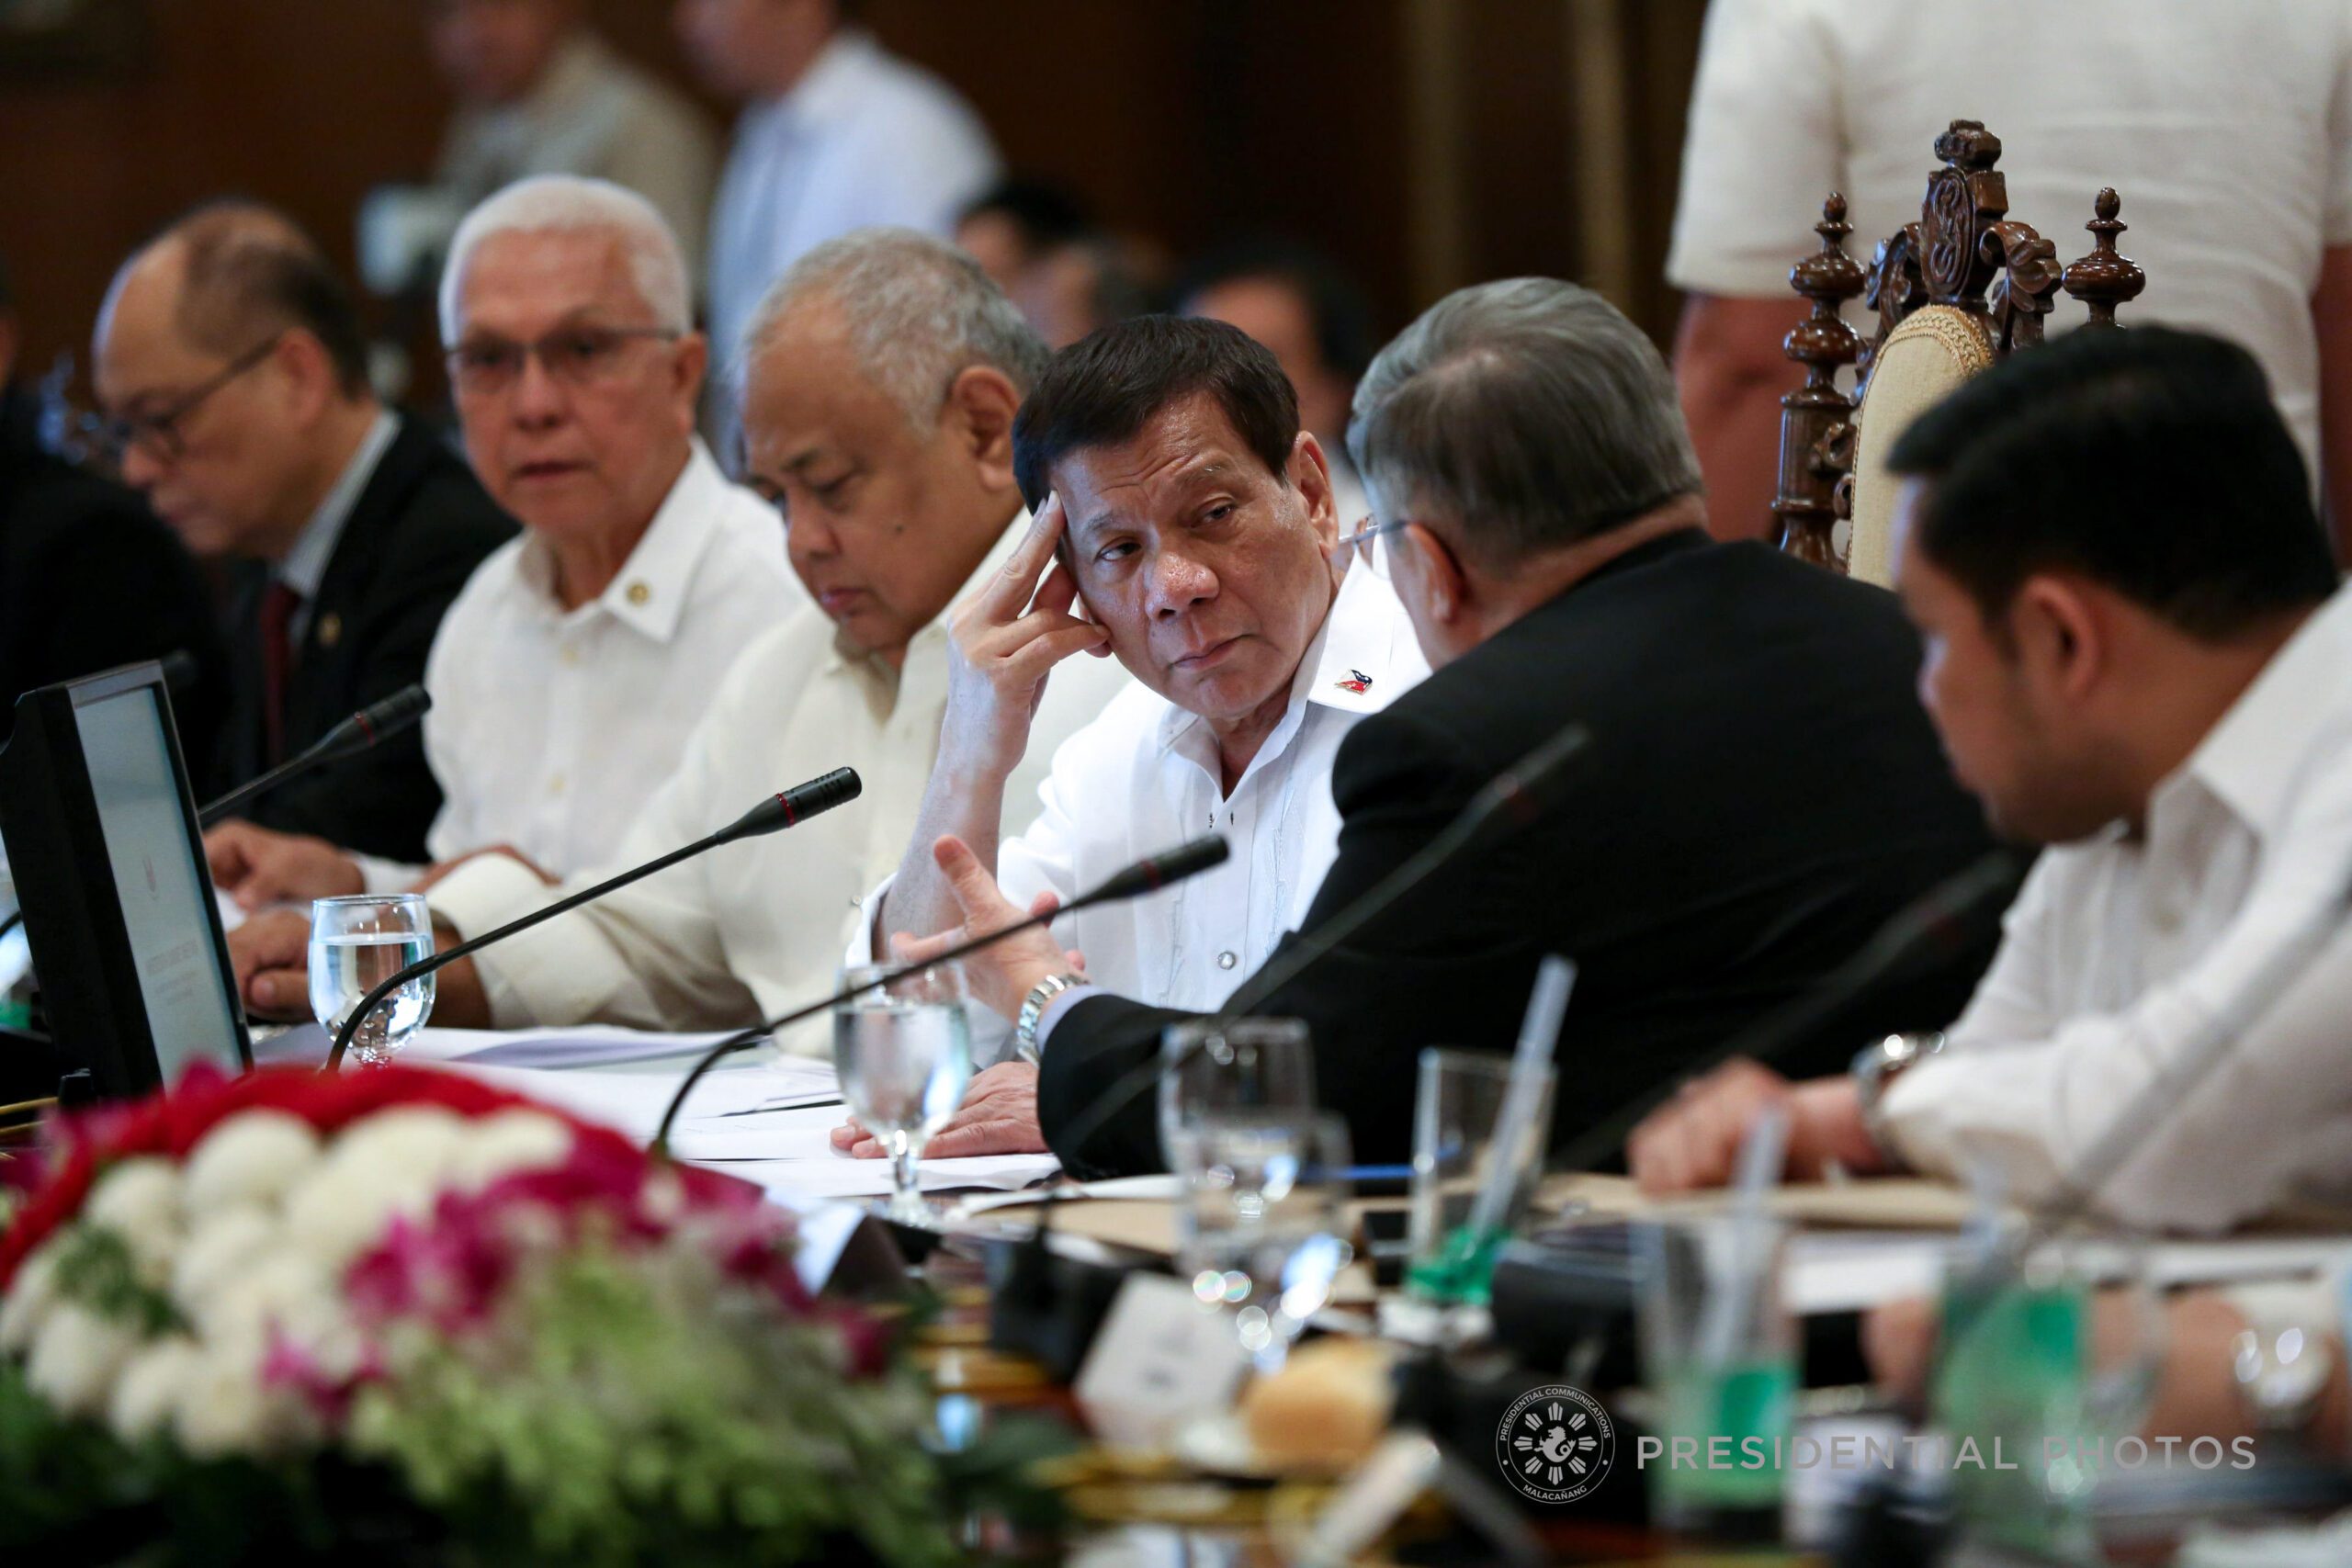 Duterte tells Cabinet medical test results came back ‘negative’